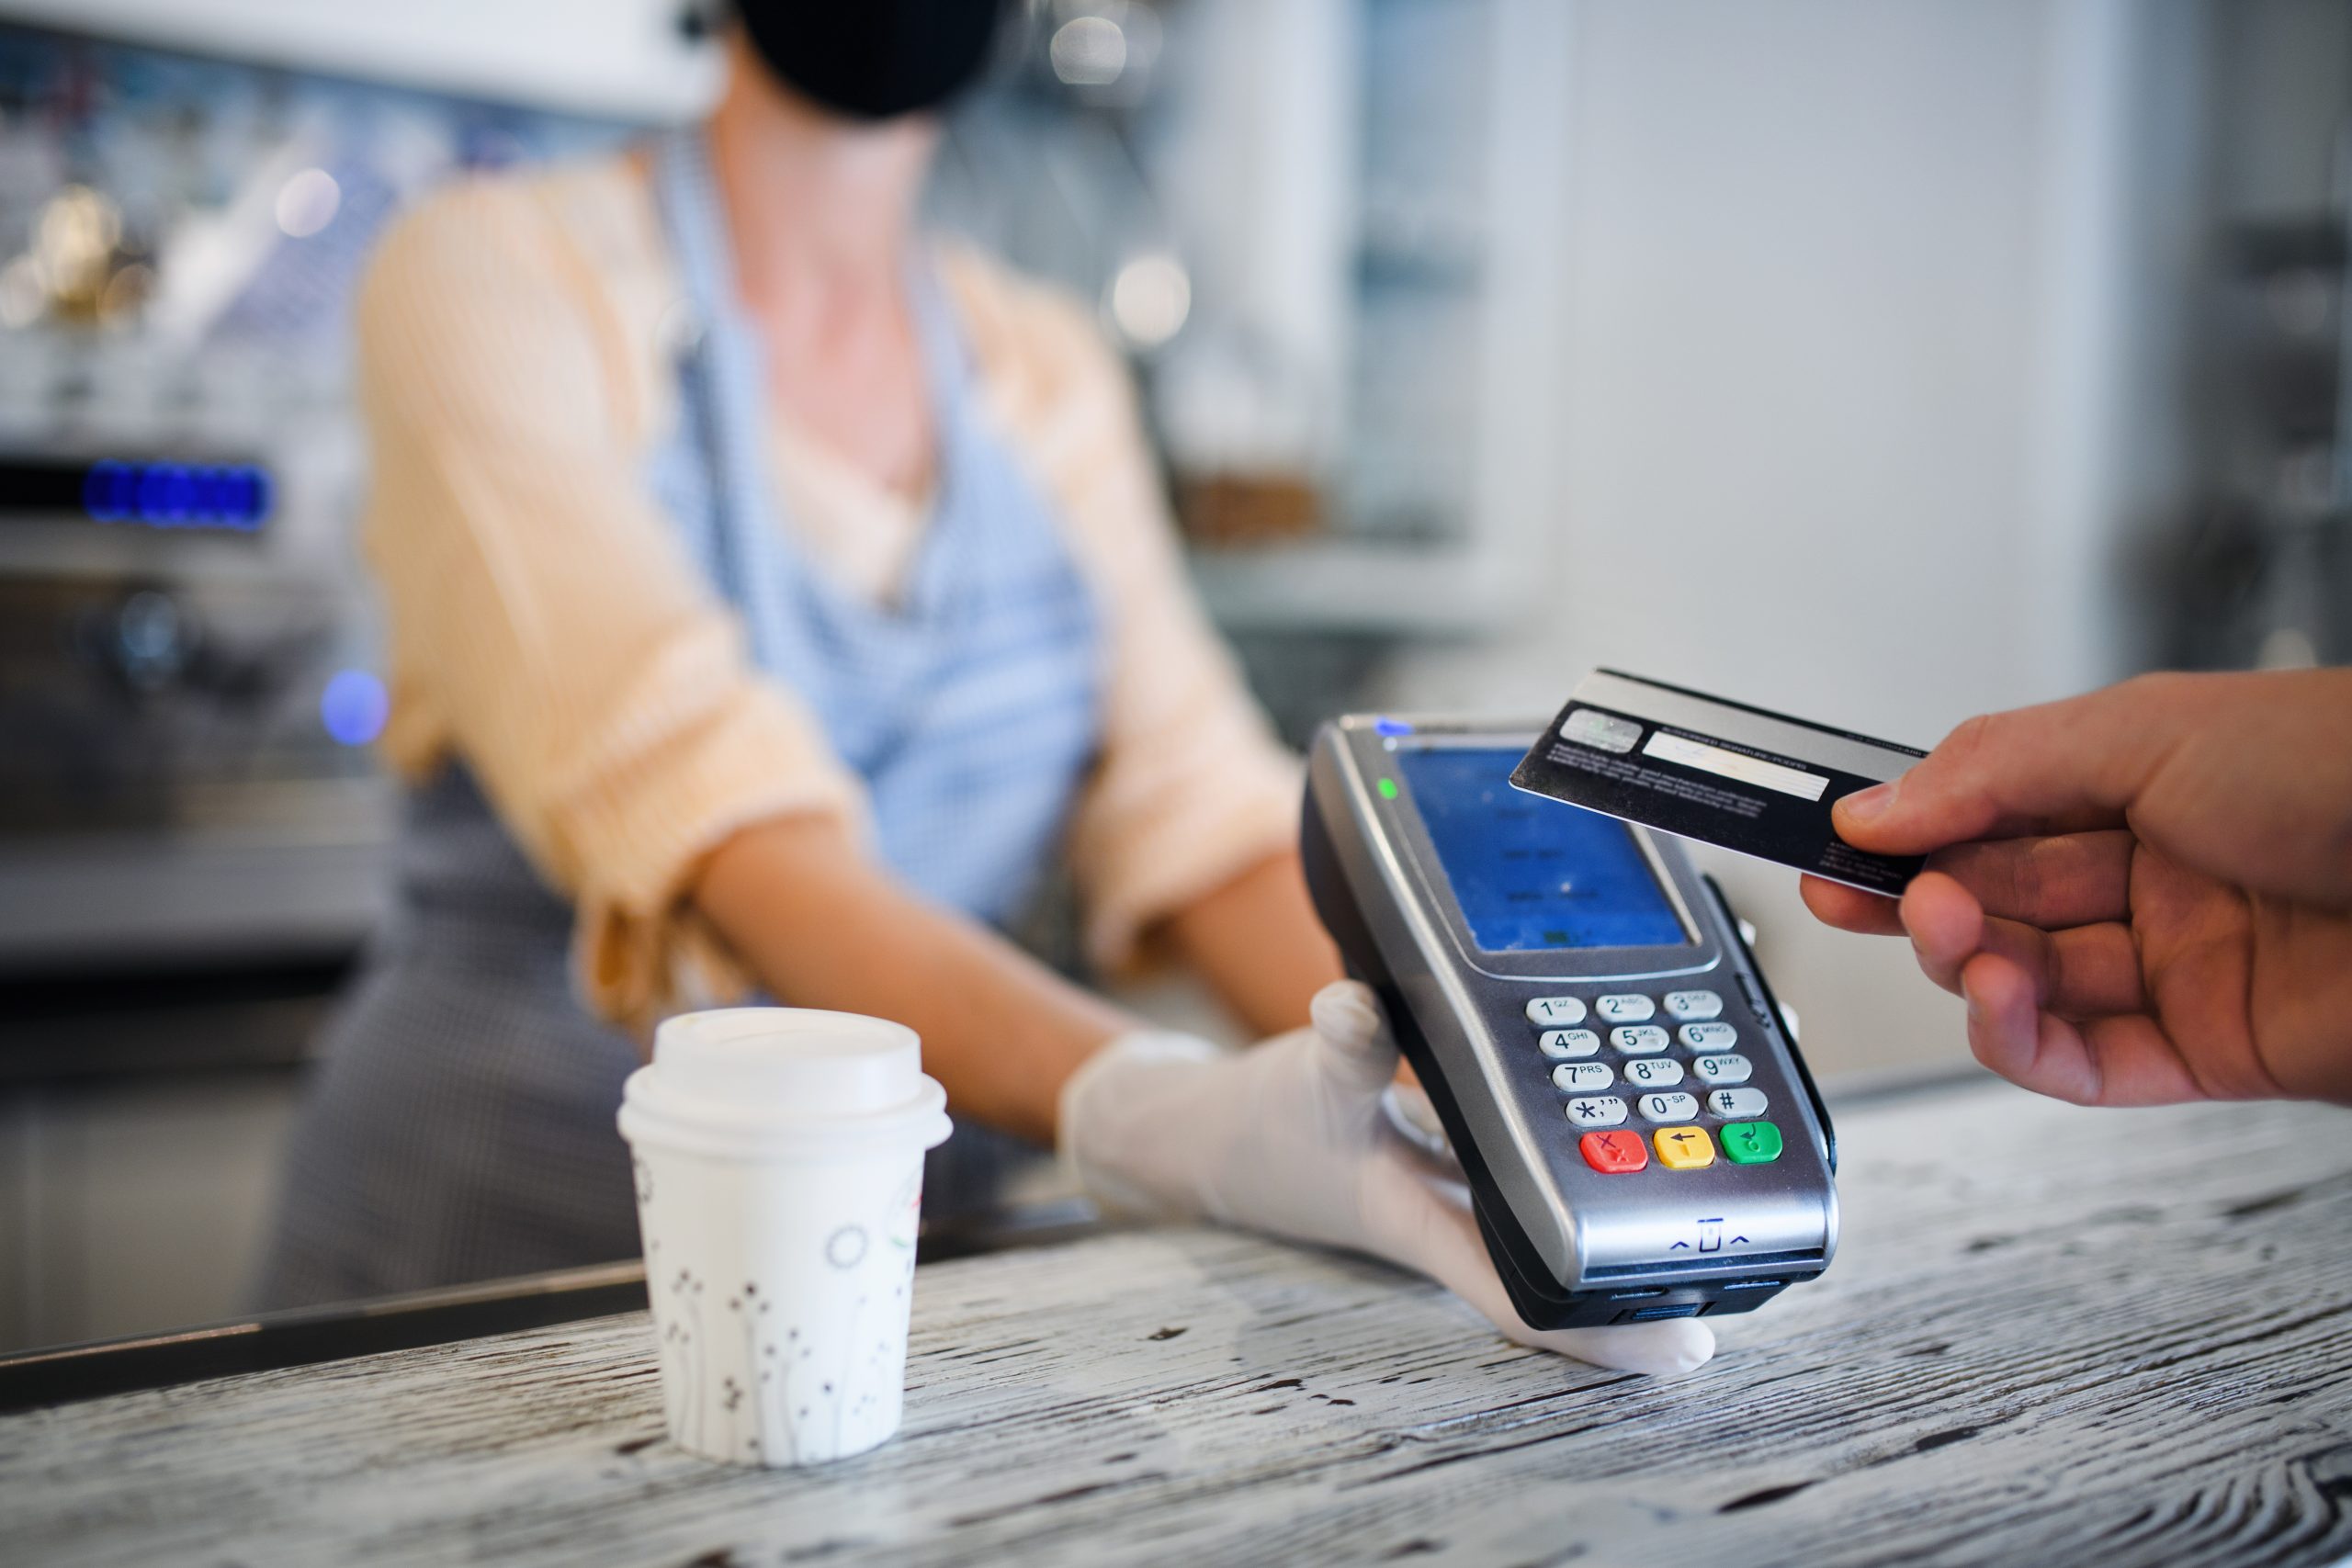 Debitkarte löst bald Bargeld als wichtigstes Zahlungsmittel ab